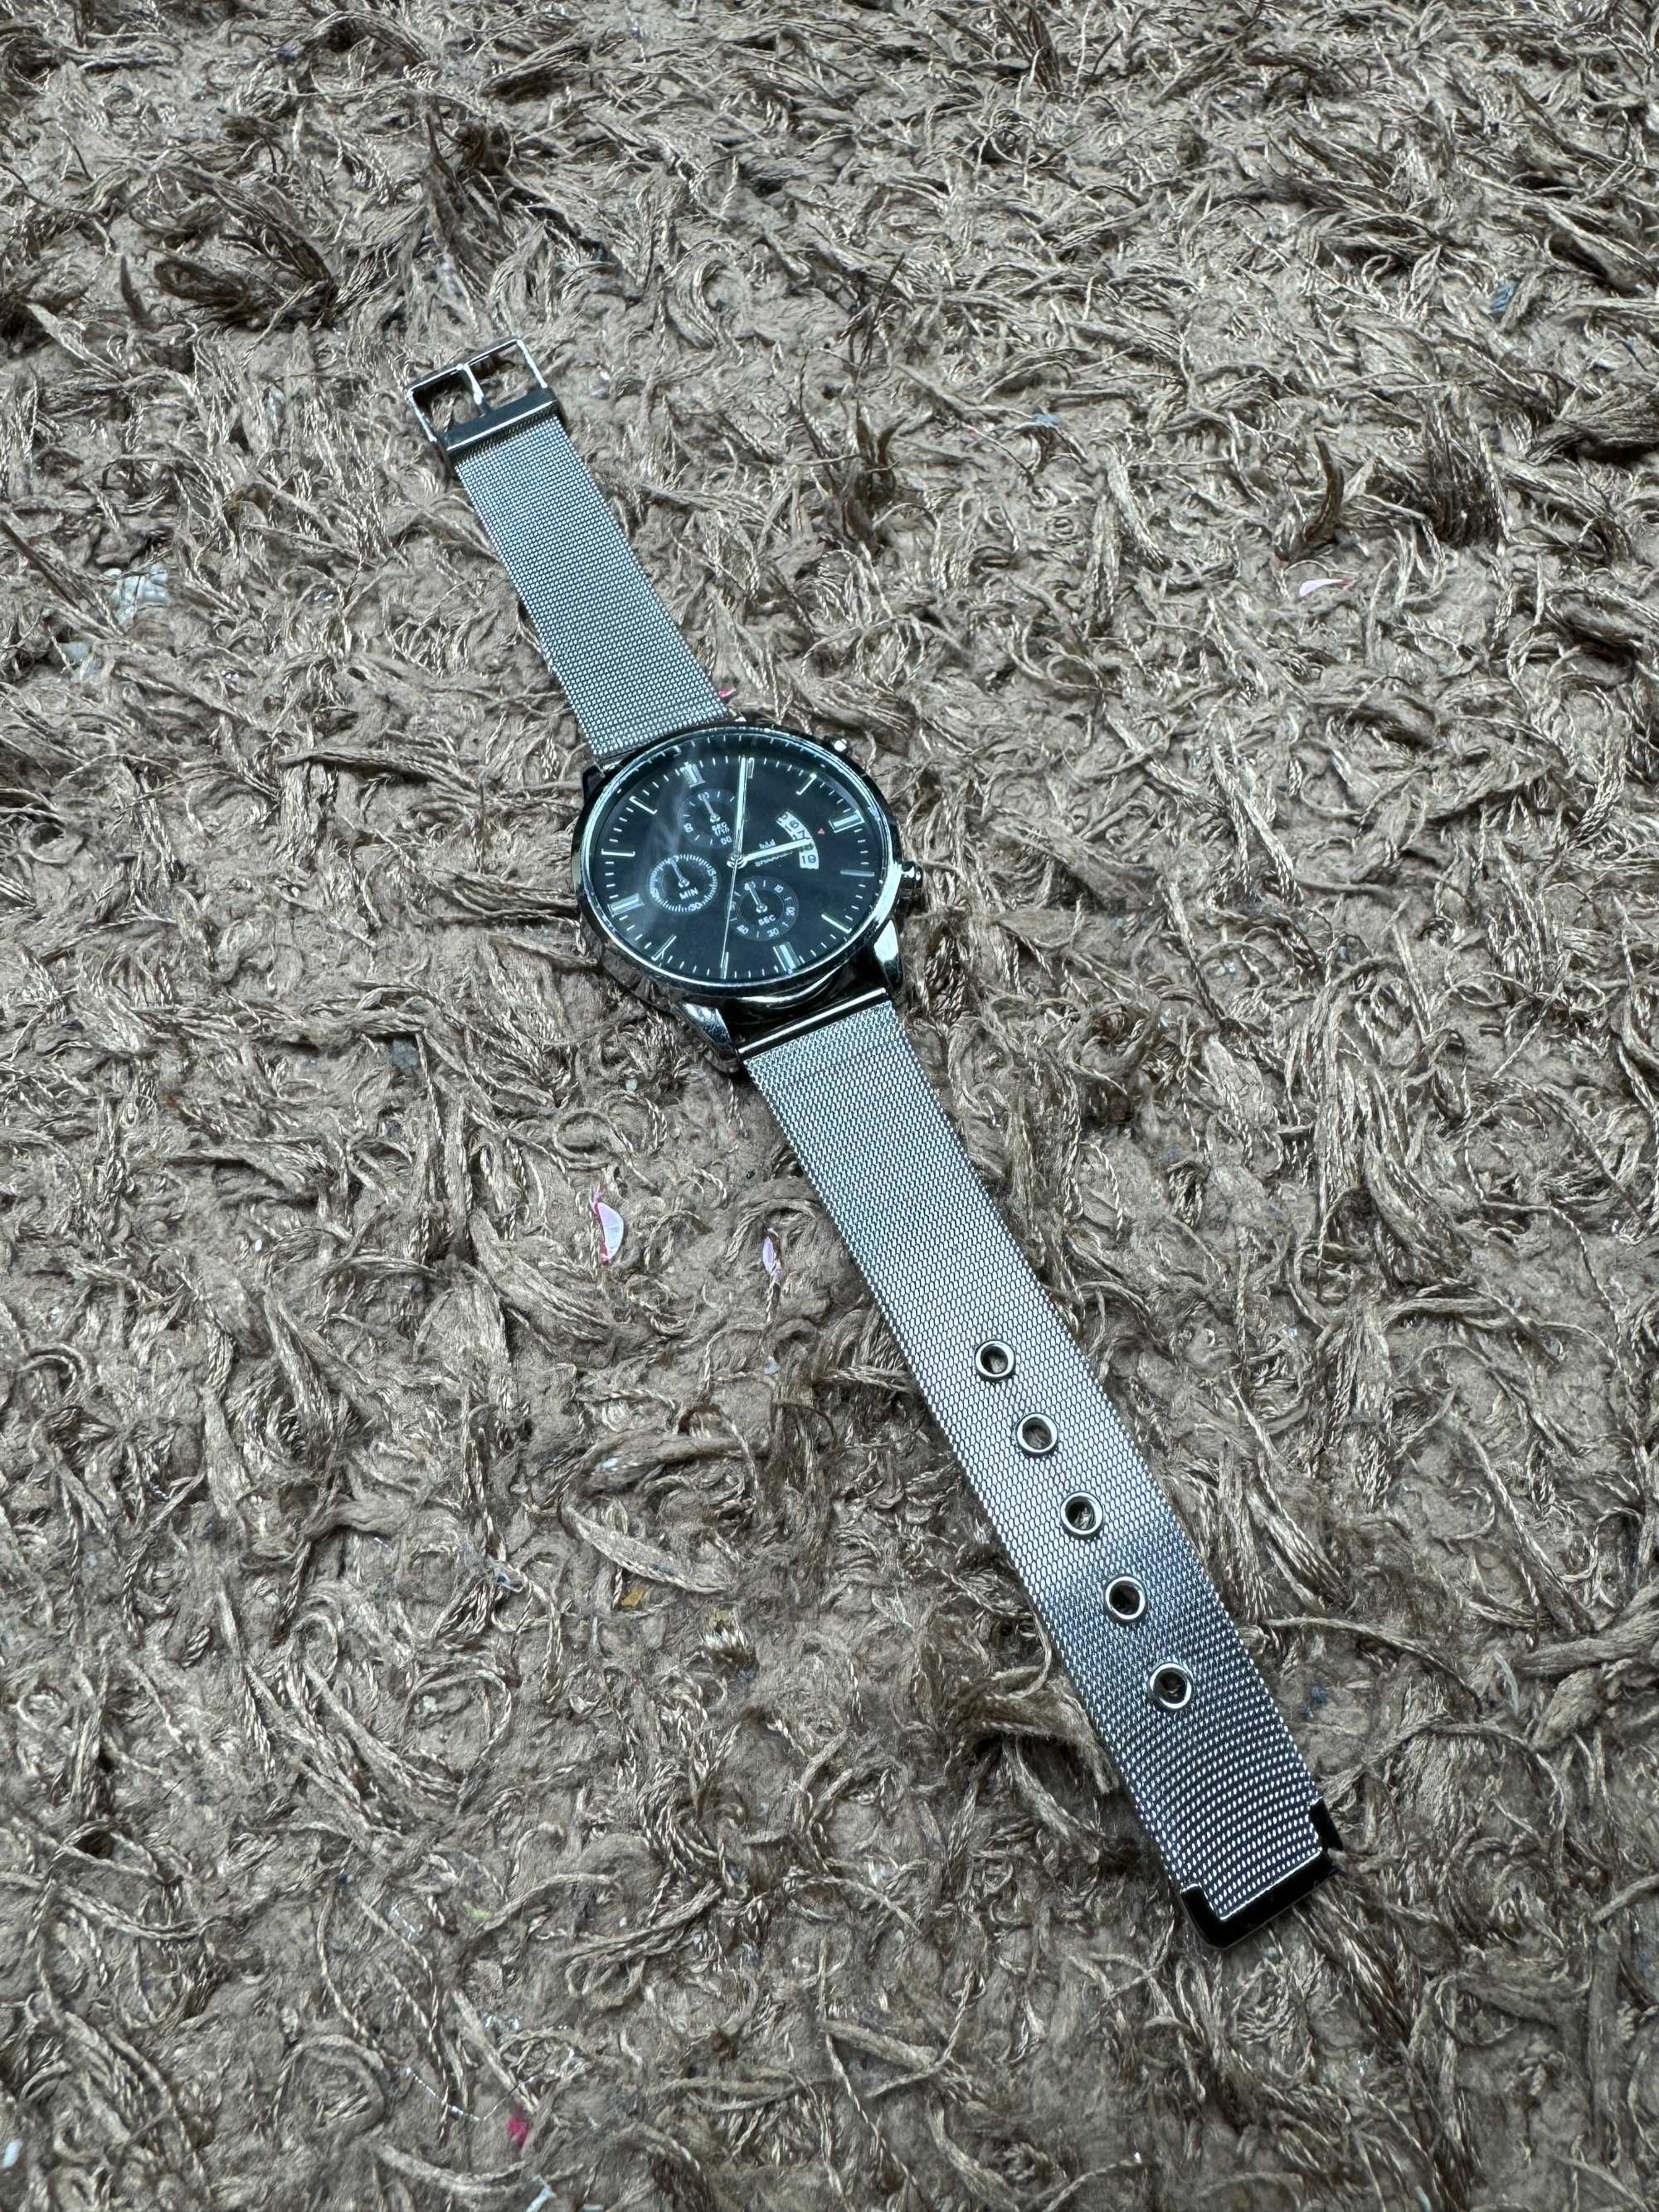 Srebny elegancki zegarek ze stali nierdzewnej regulowany metalowy